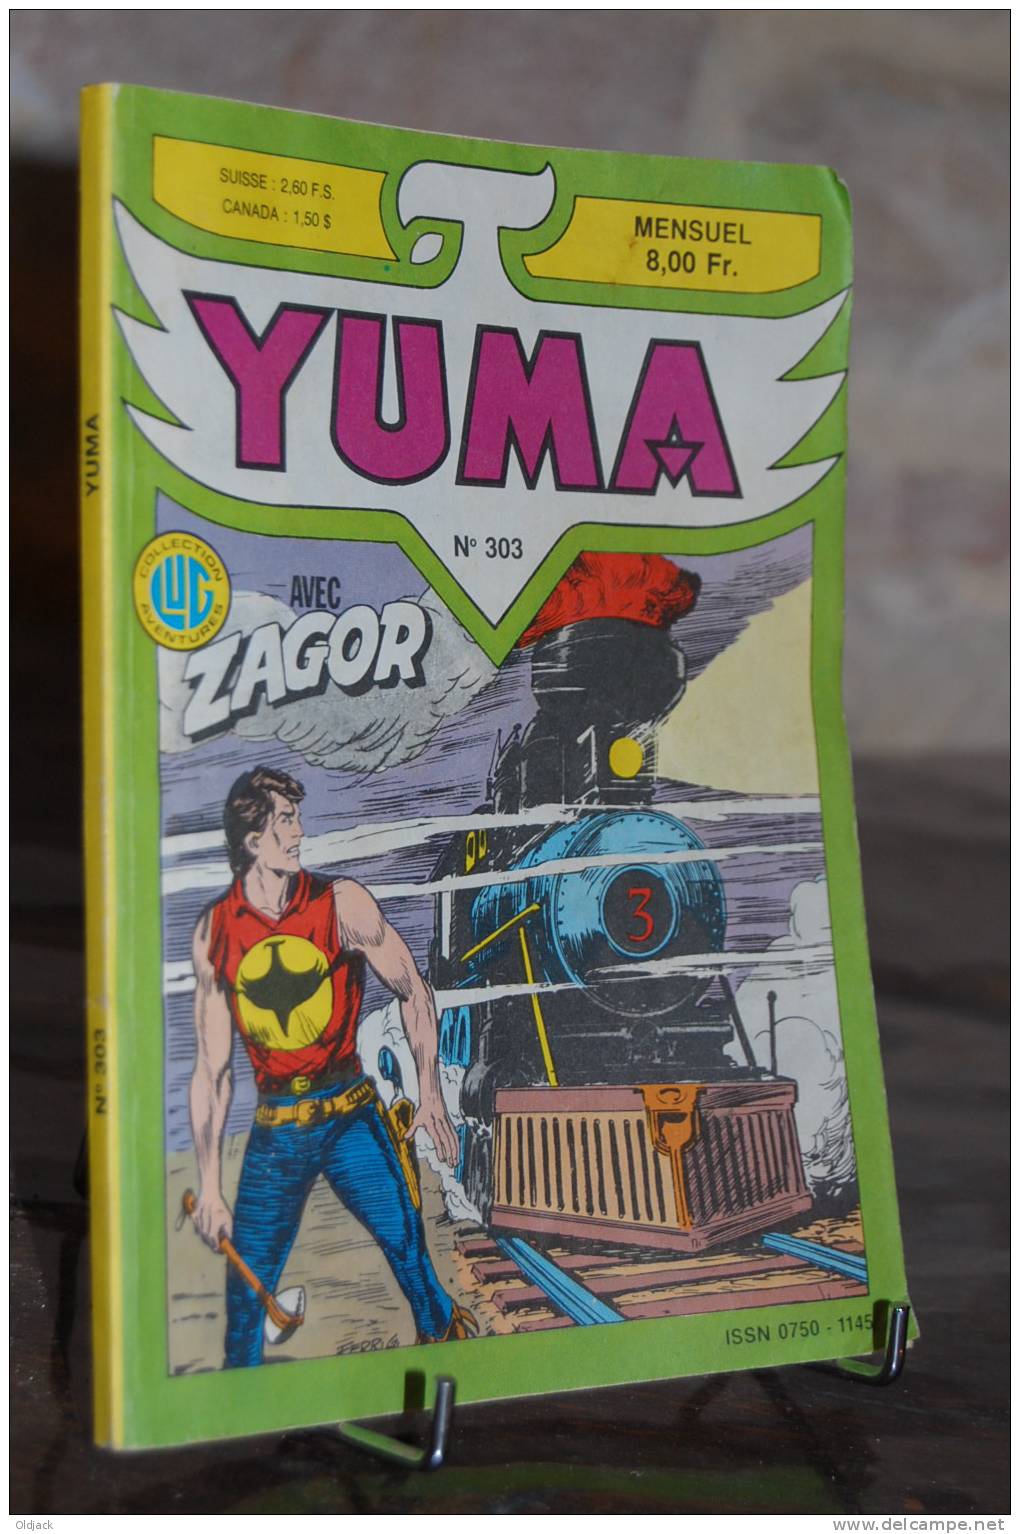 YUMA N°303 - Yuma